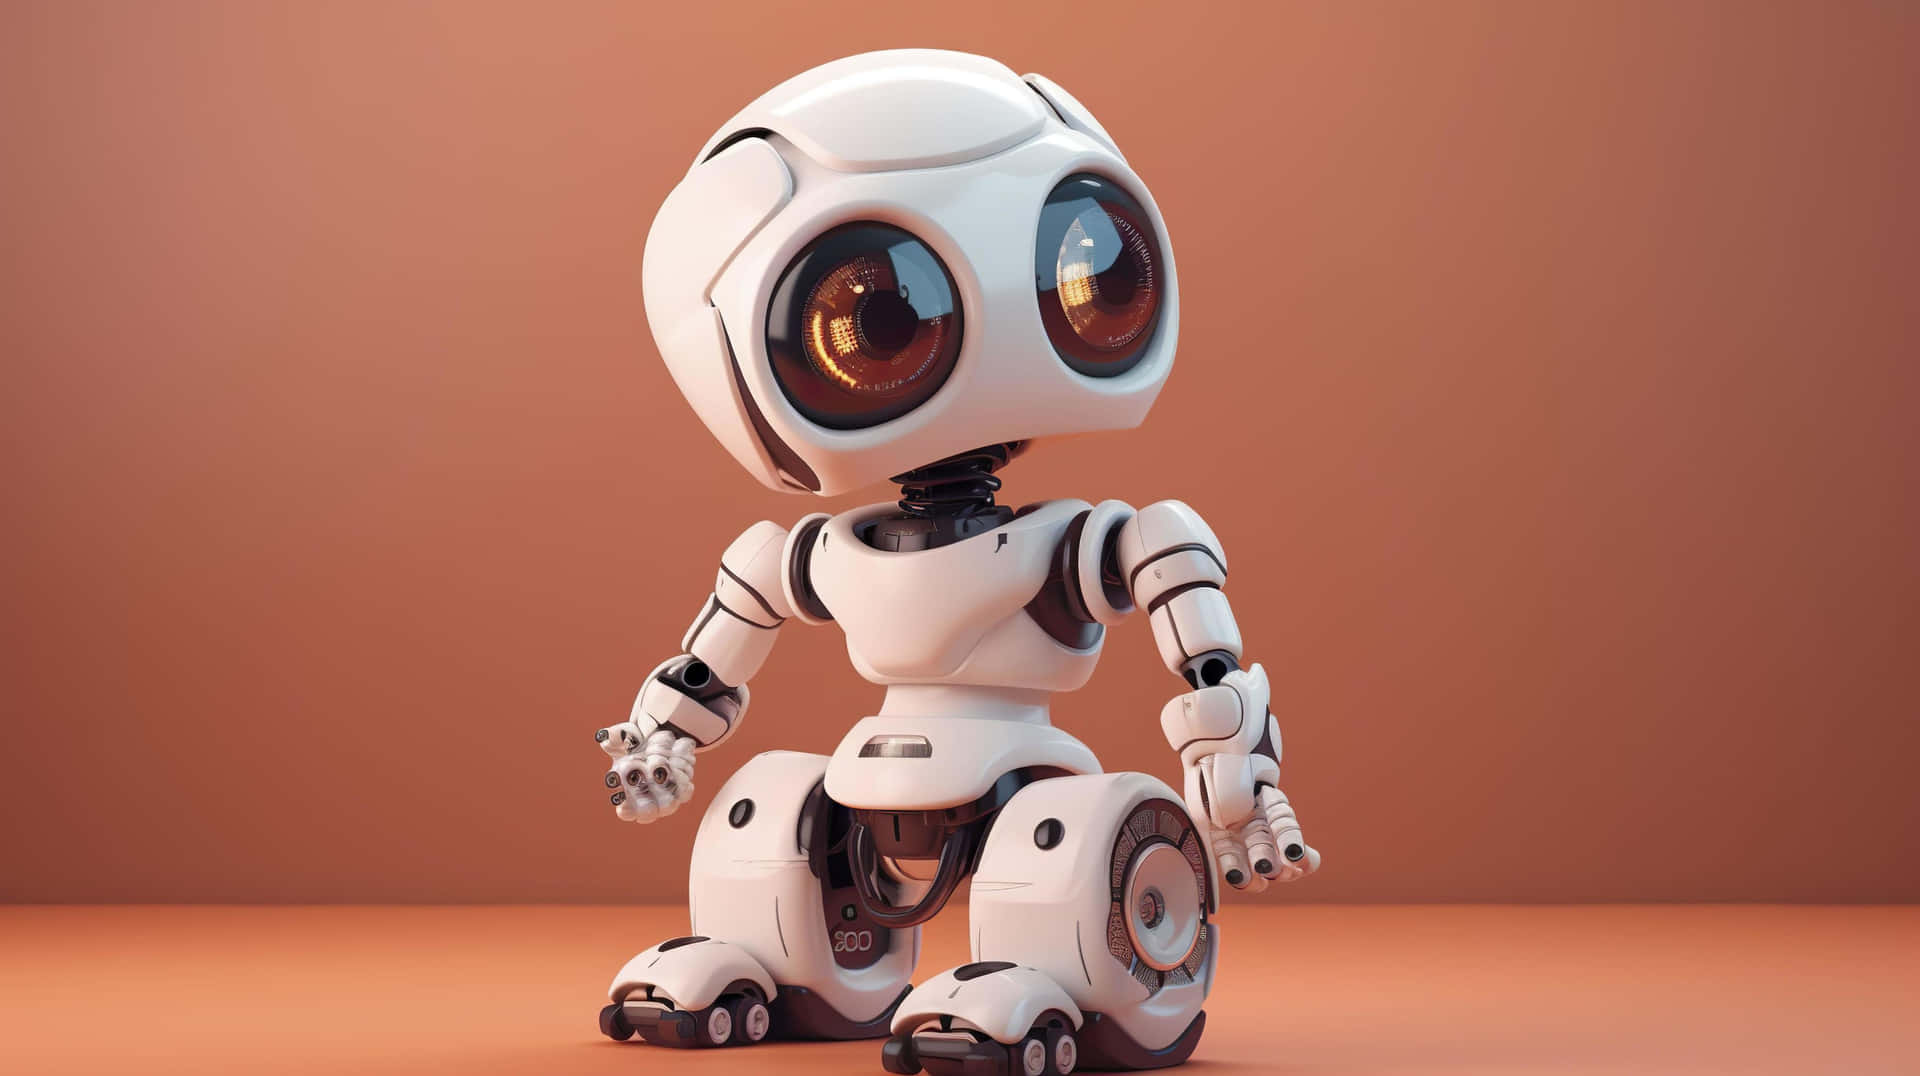 "An Adorable Kawaii Robot Ready for Adventure!" Wallpaper